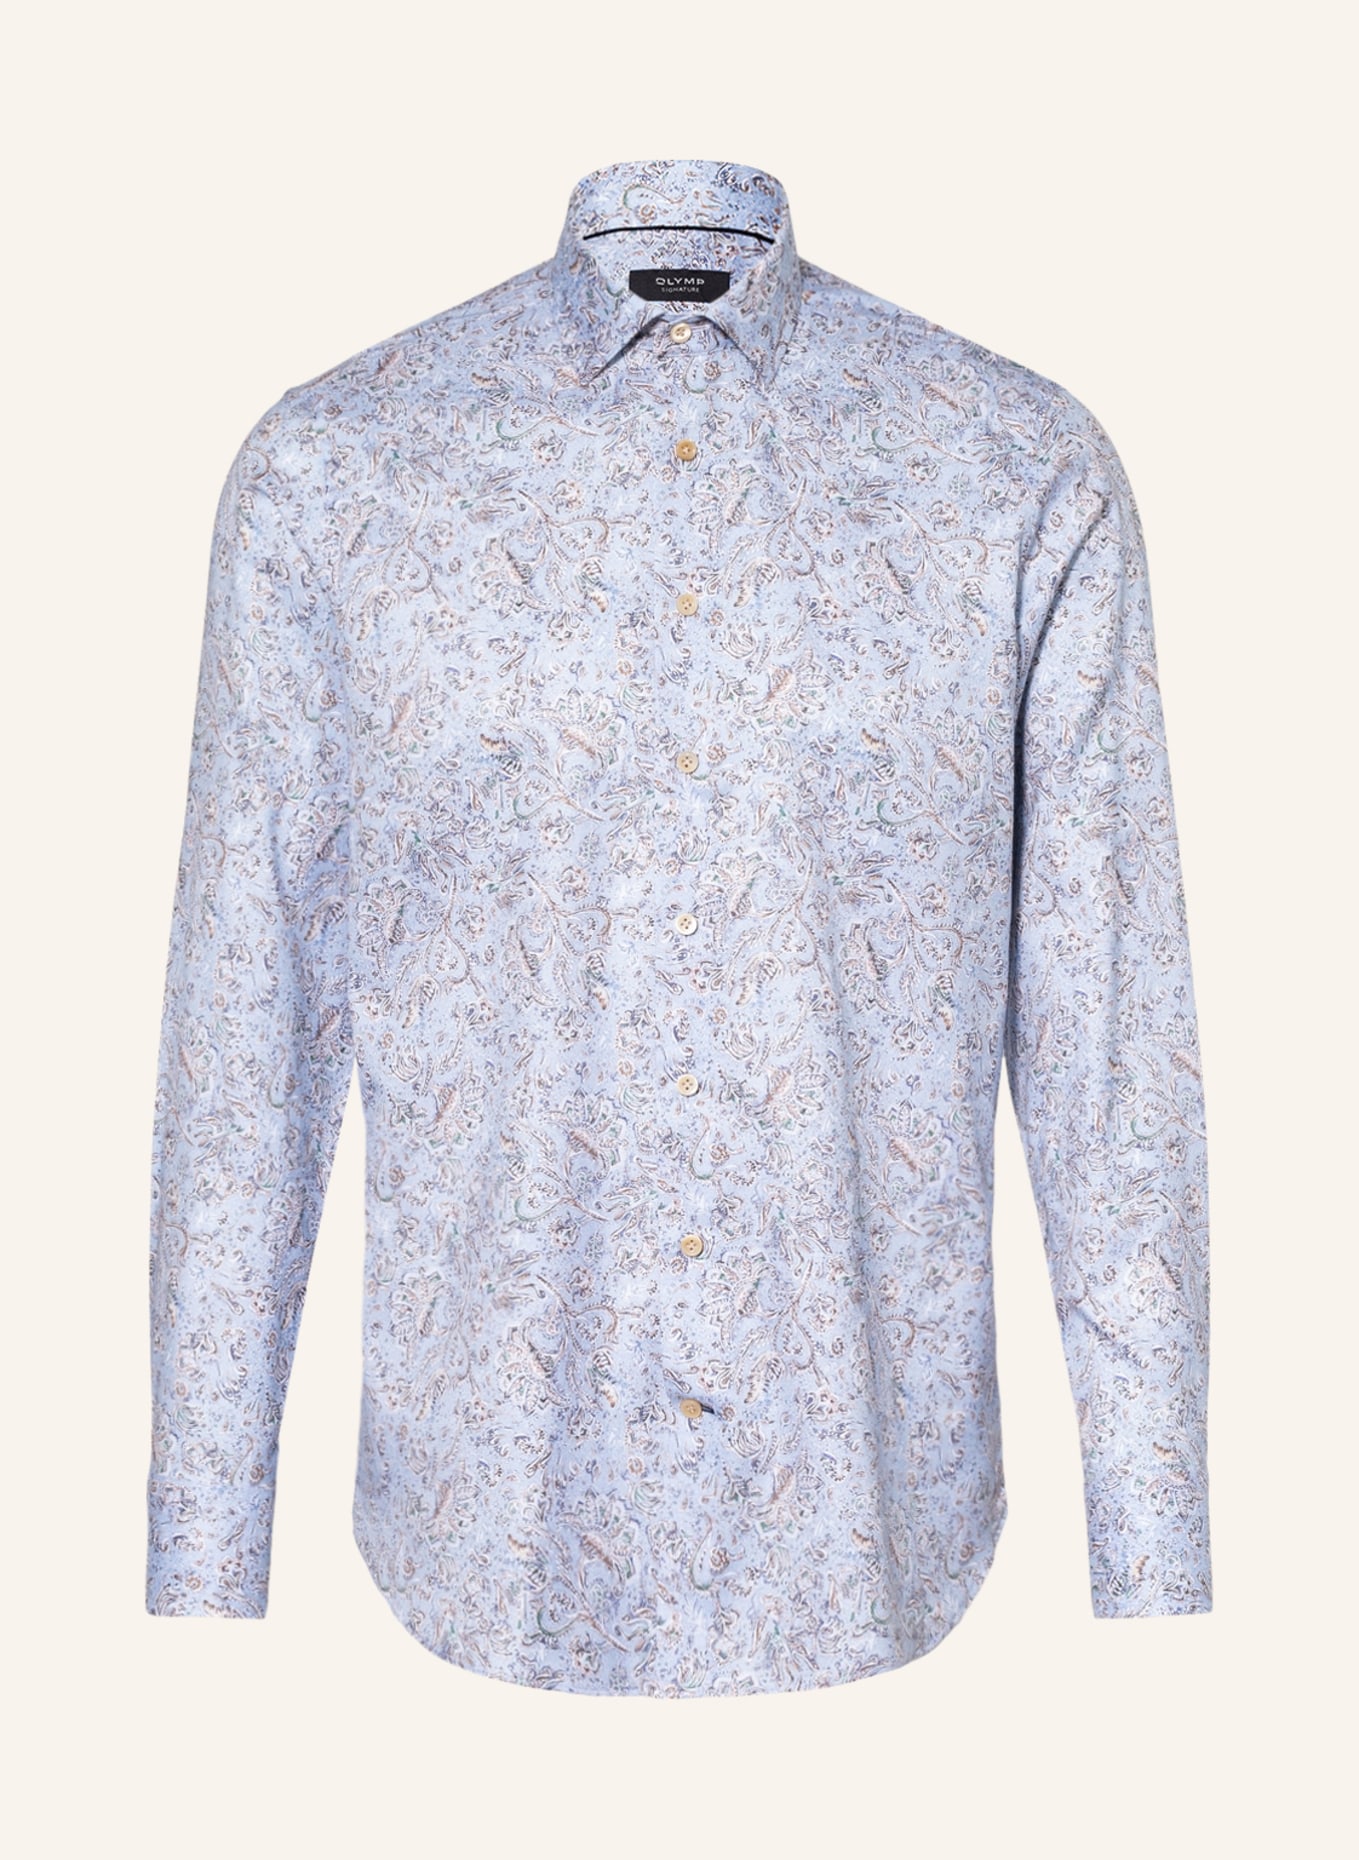 OLYMP SIGNATURE Hemd tailored fit , Farbe: HELLBLAU (Bild 1)